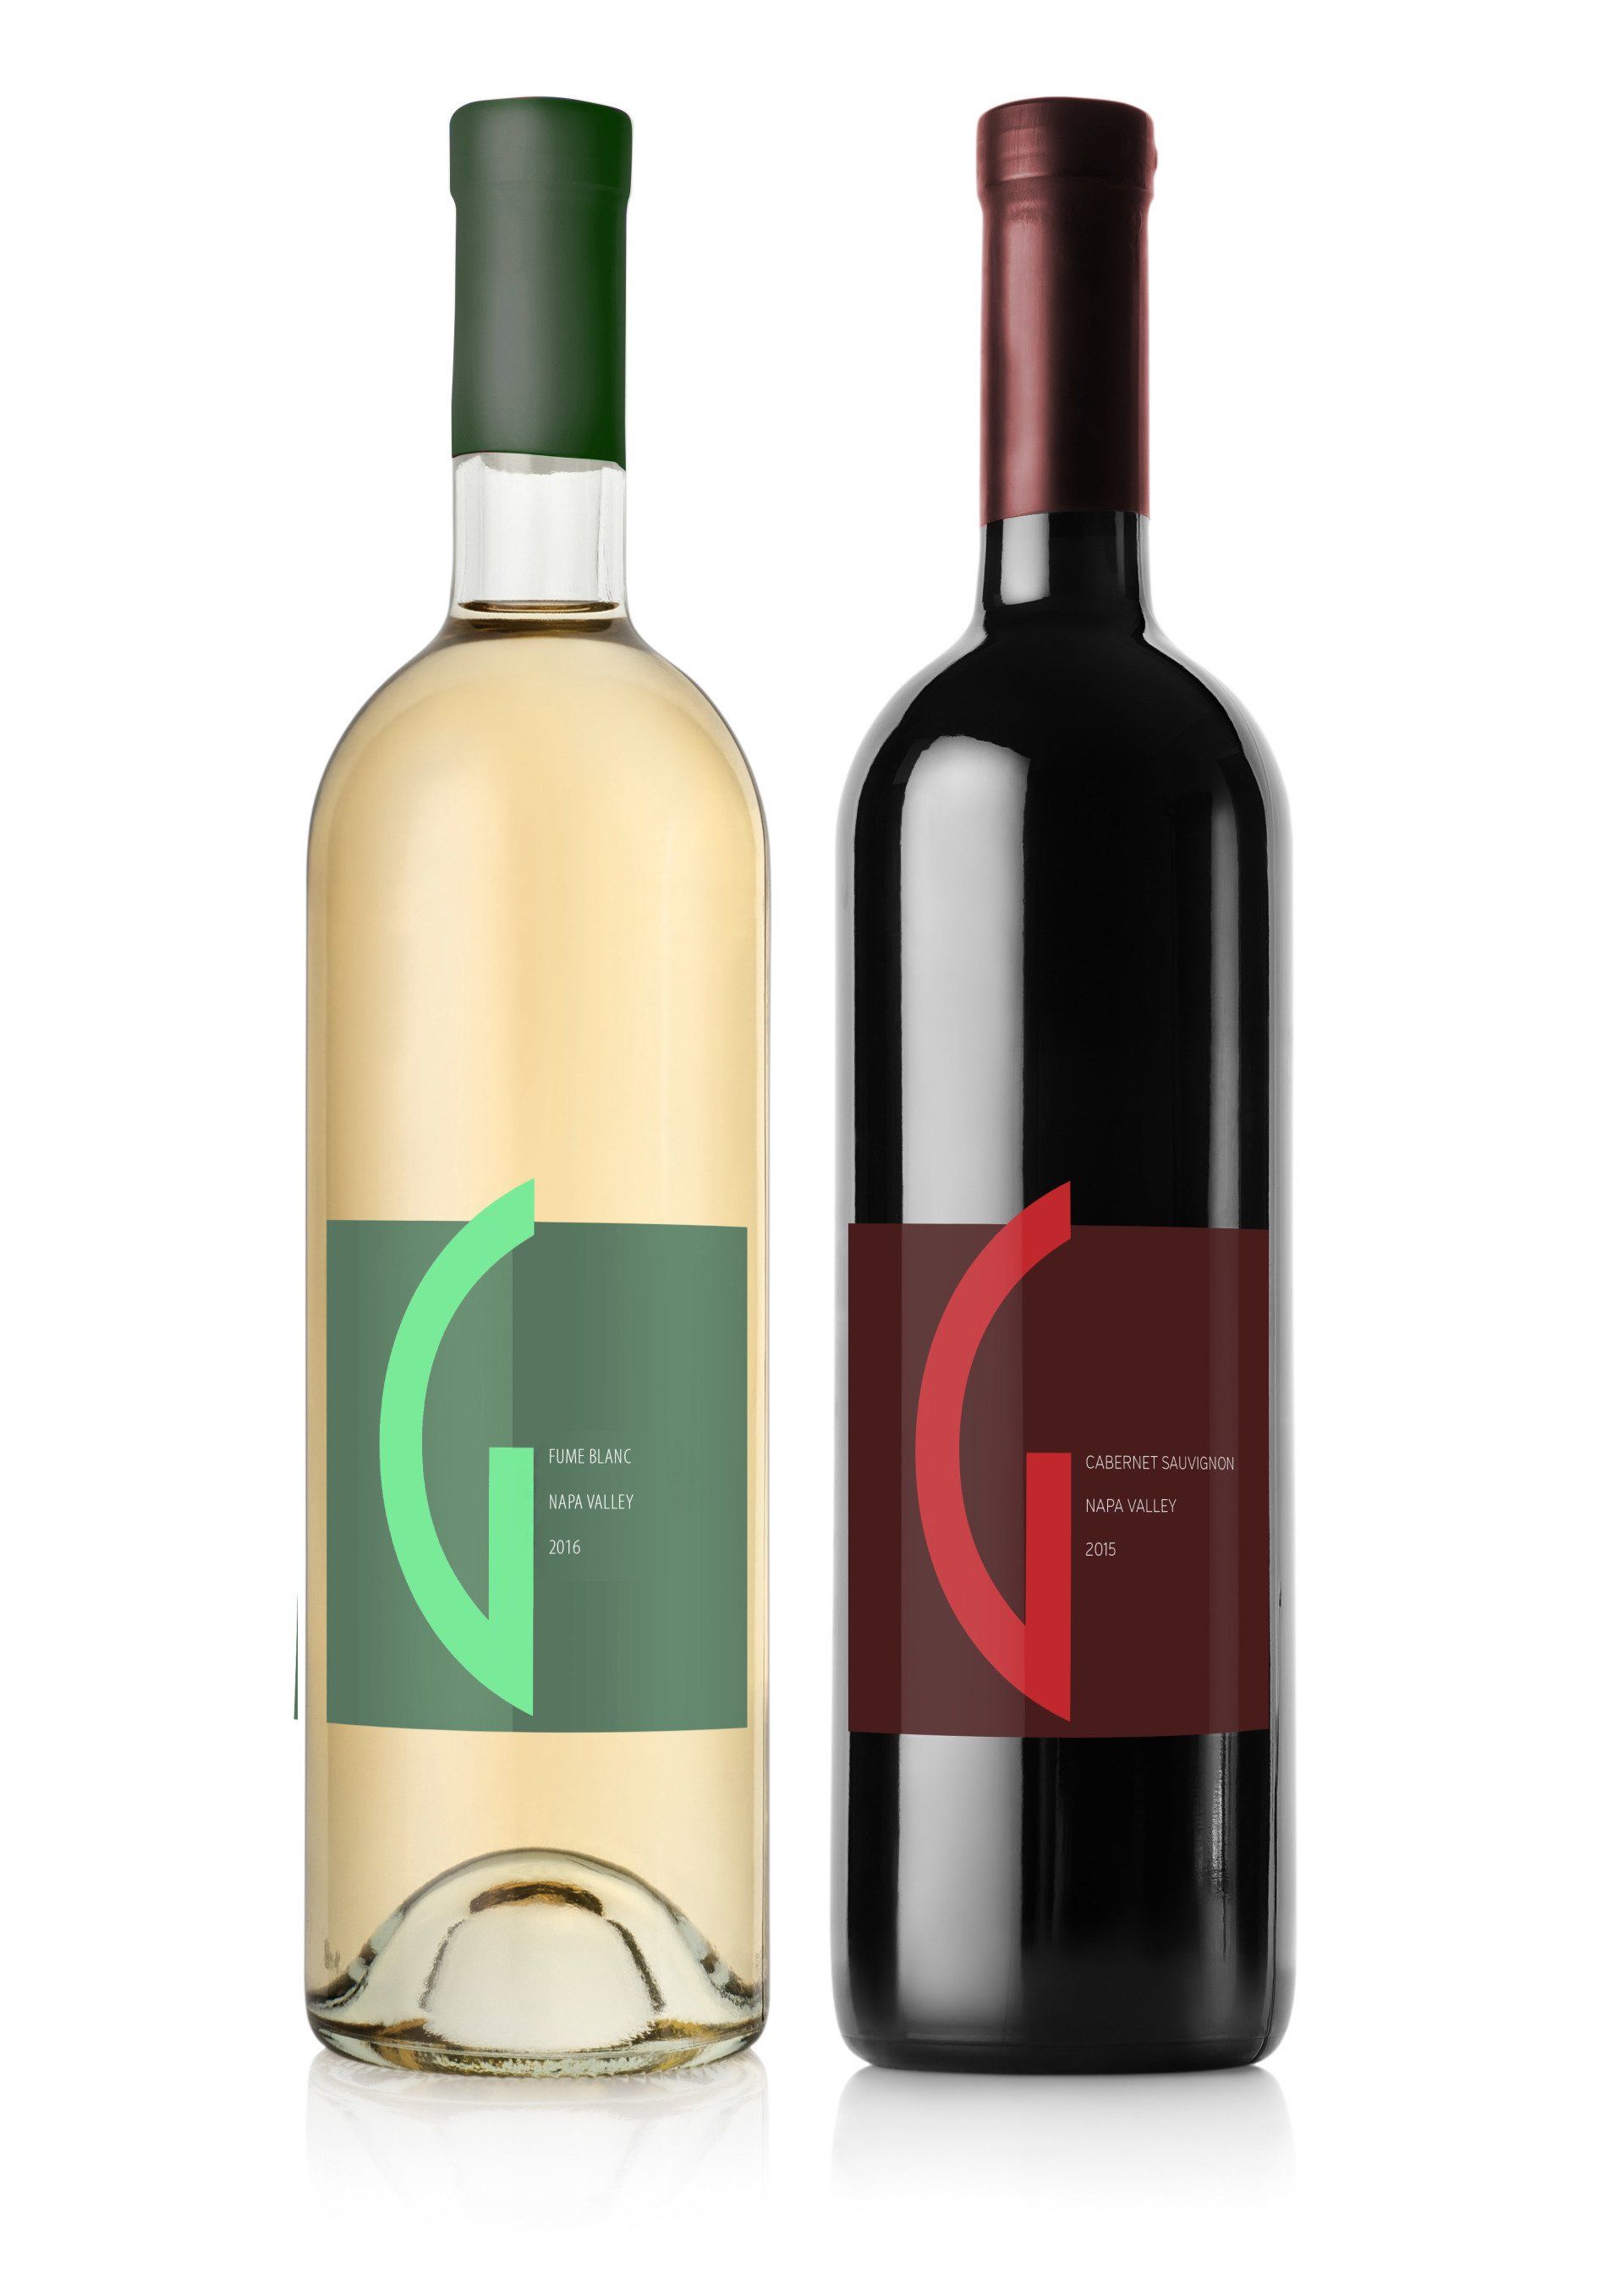 label designs for a wine company